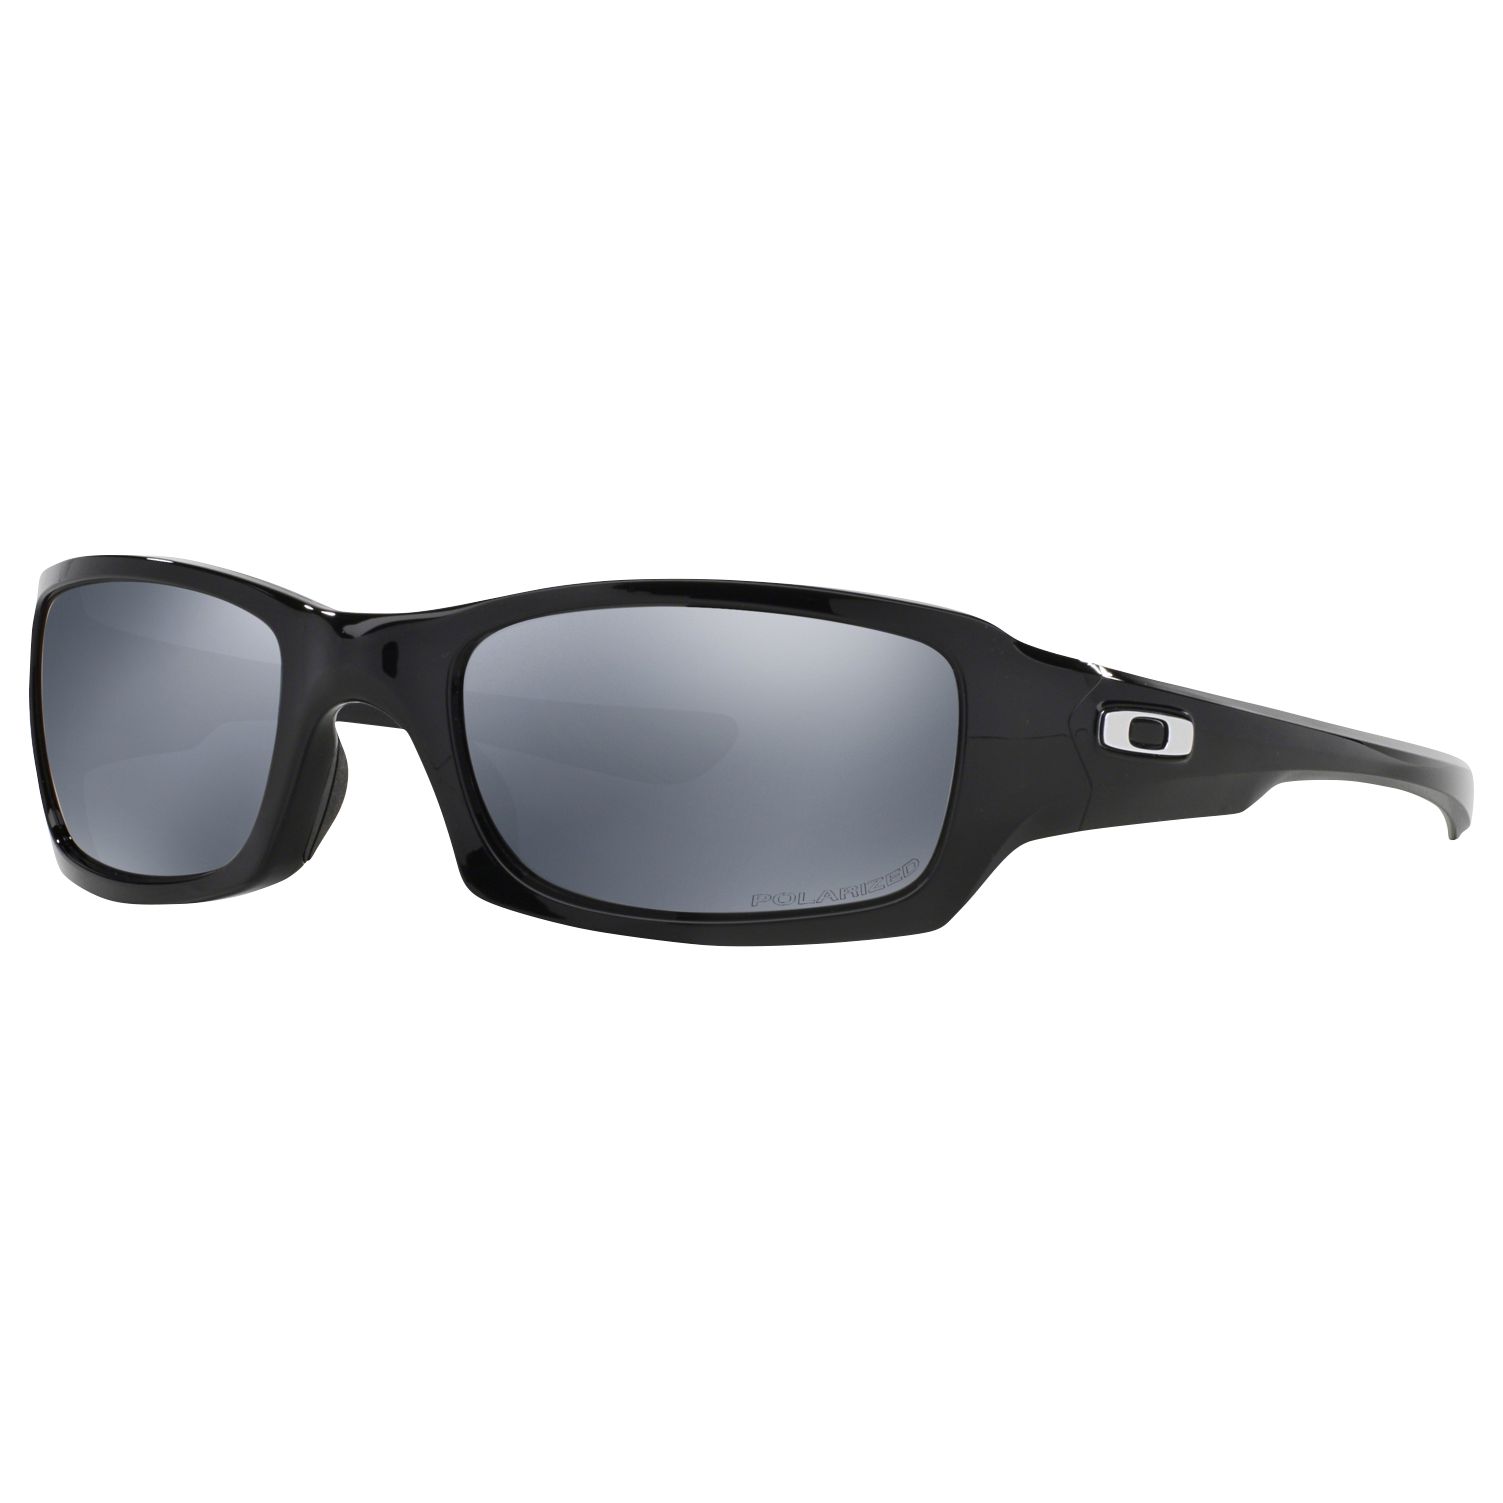 Oakley OO9238 Поляризованные прямоугольные солнцезащитные очки Fives Squared, полированный черный/черный иридий